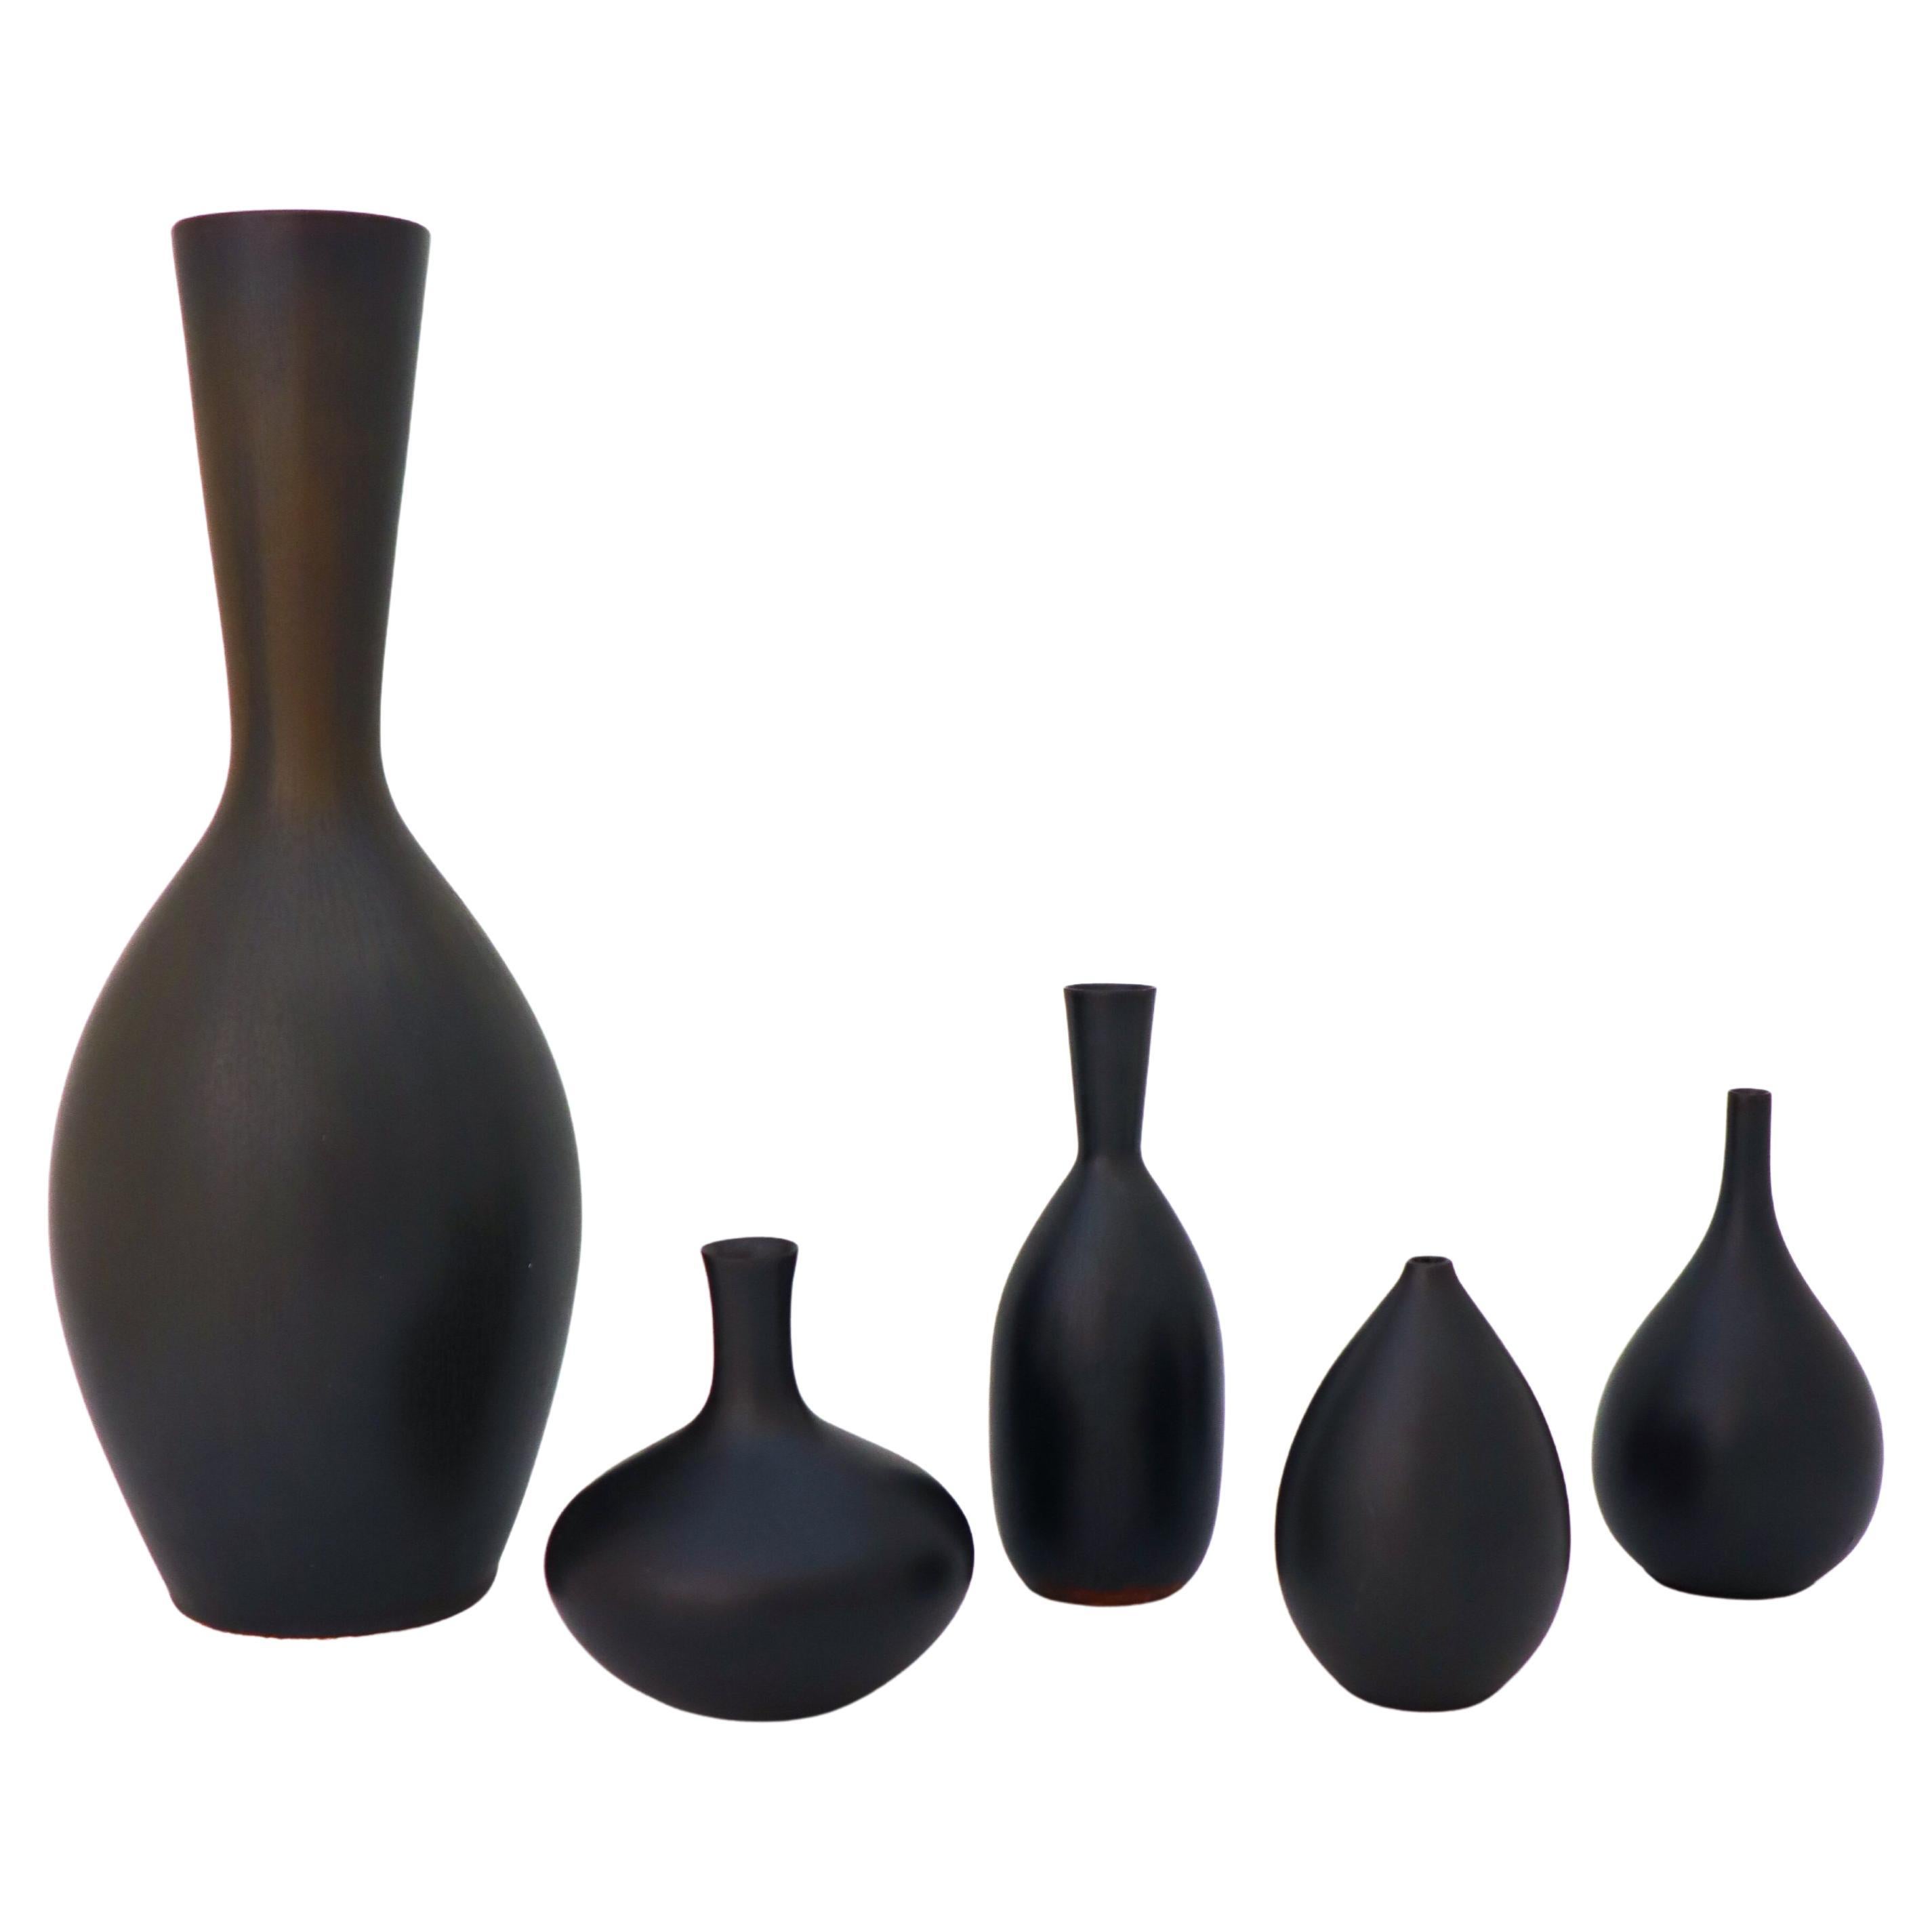 Groupe de 5 vases noirs en céramique, Rörstrand Carl-Harry Stålhane, milieu du siècle dernier